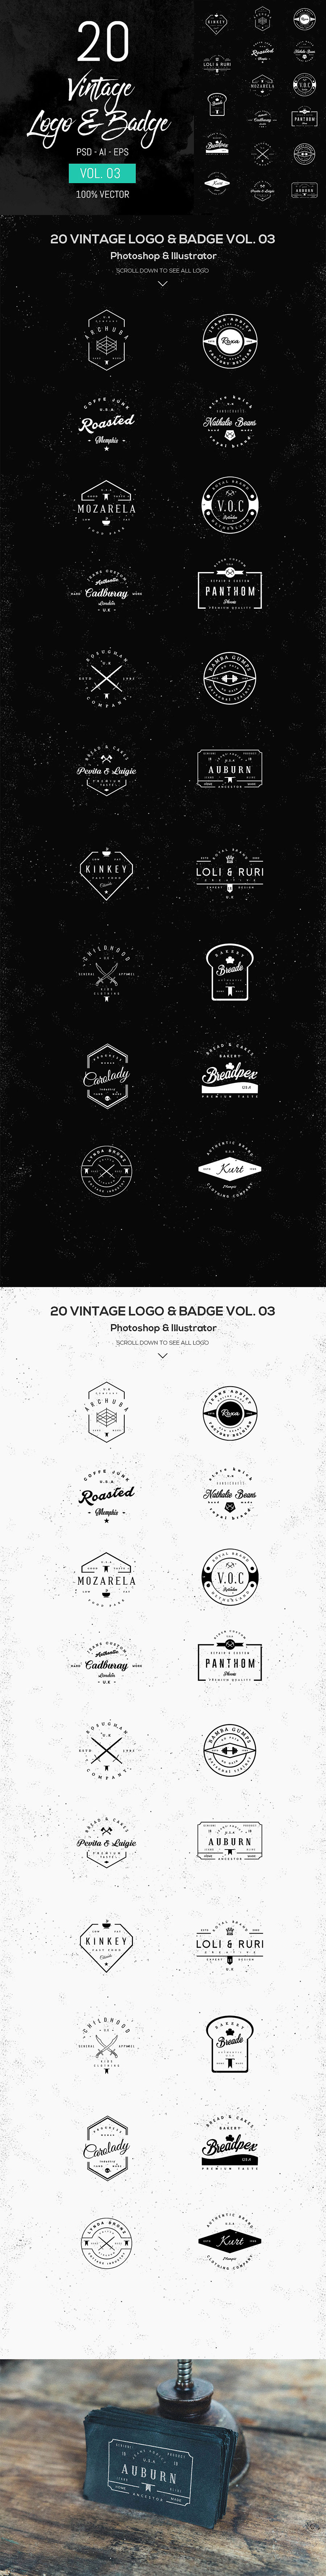 20个经典的logo矢量模版免费下载[PSD,Ai]